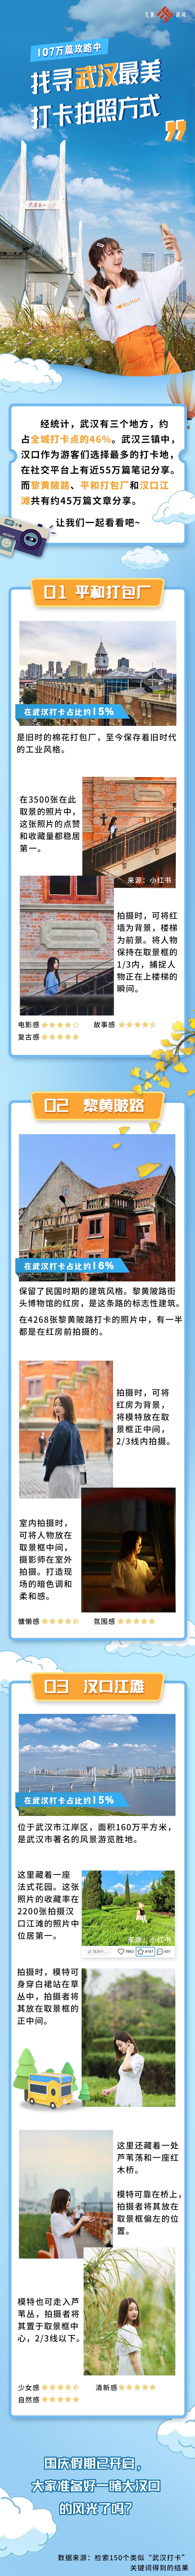 107万篇攻略中解锁武汉最美拍照地：46%的打卡者选择了这三个地方